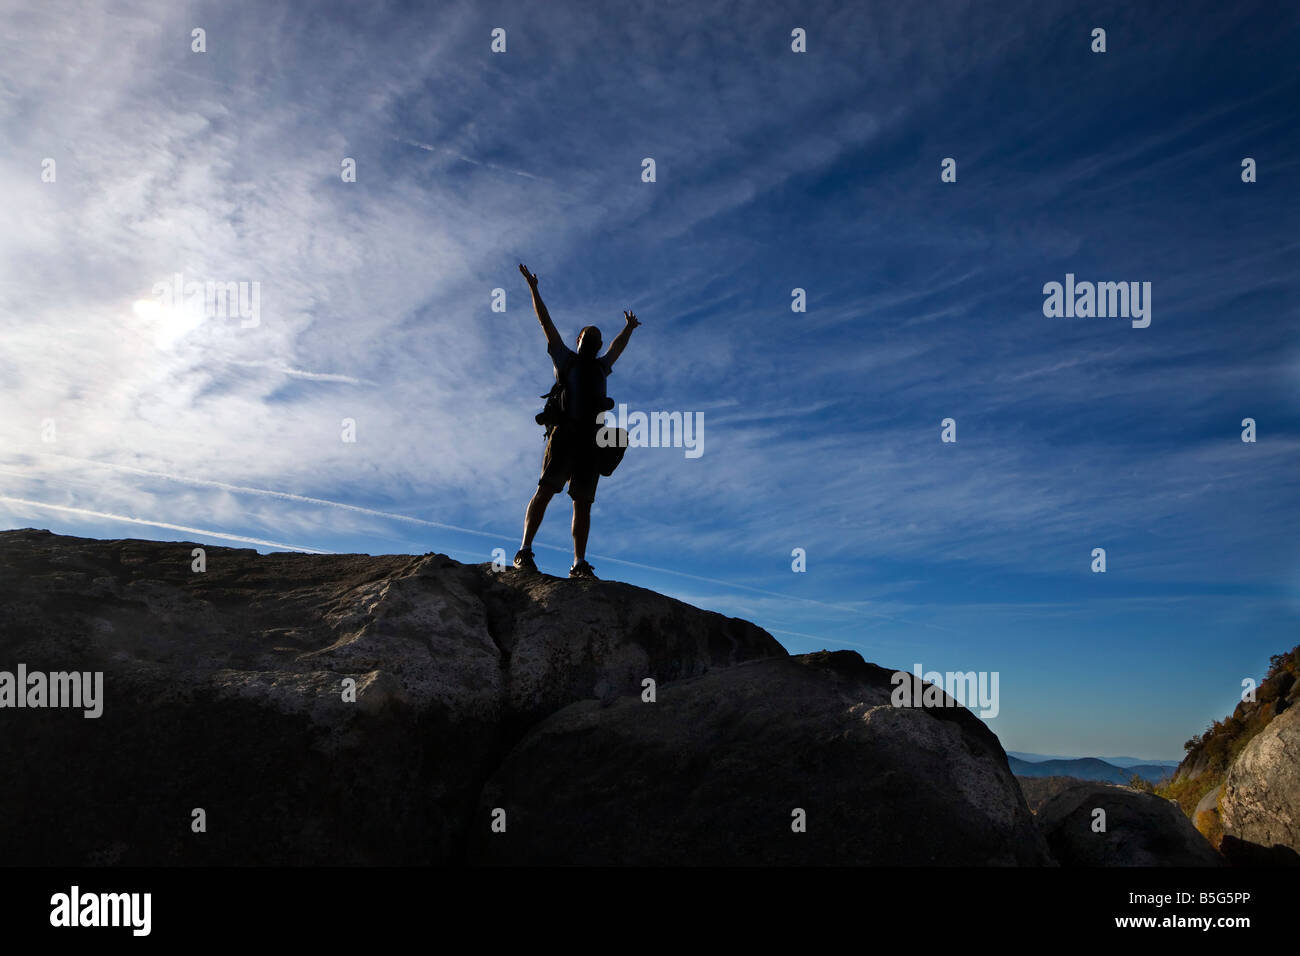 D'un homme Silohuette avec bras levés au-dessus de sa tête contre un ciel bleu profond Old Rag Mountain Shenandoah National Park, VA Banque D'Images